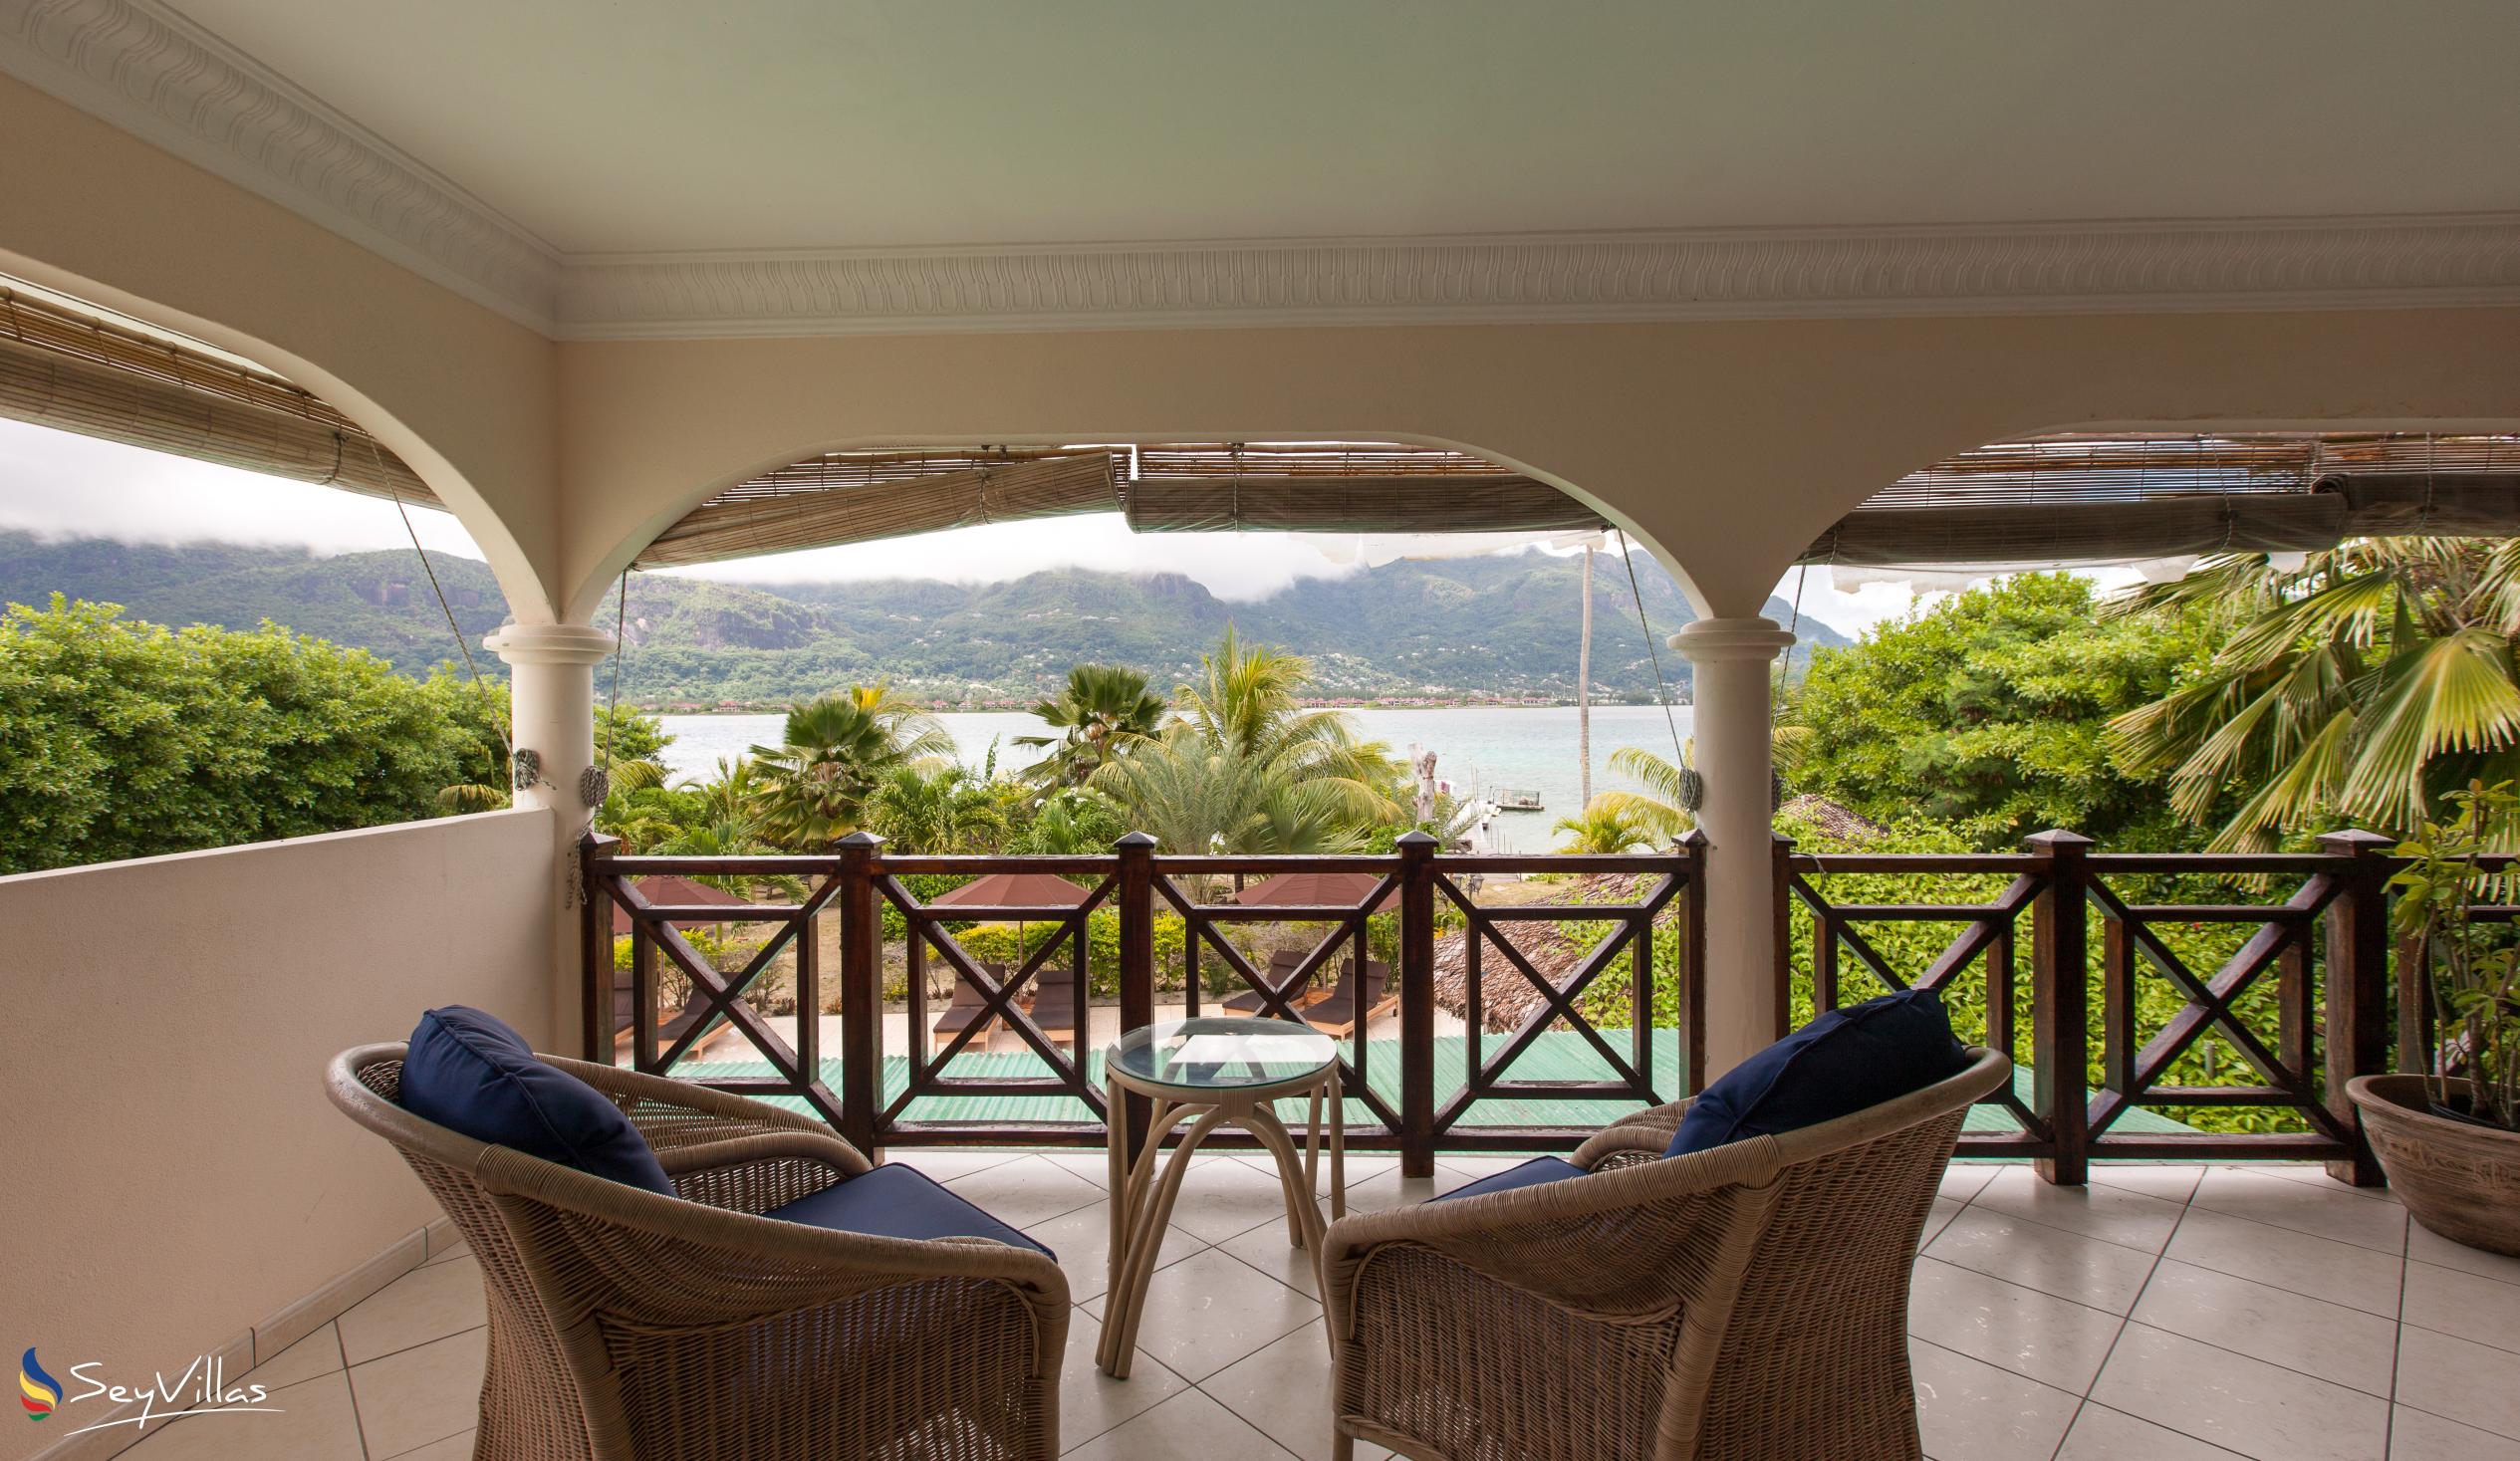 Foto 70: Villa de Cerf - Cerf Island (Seychellen)